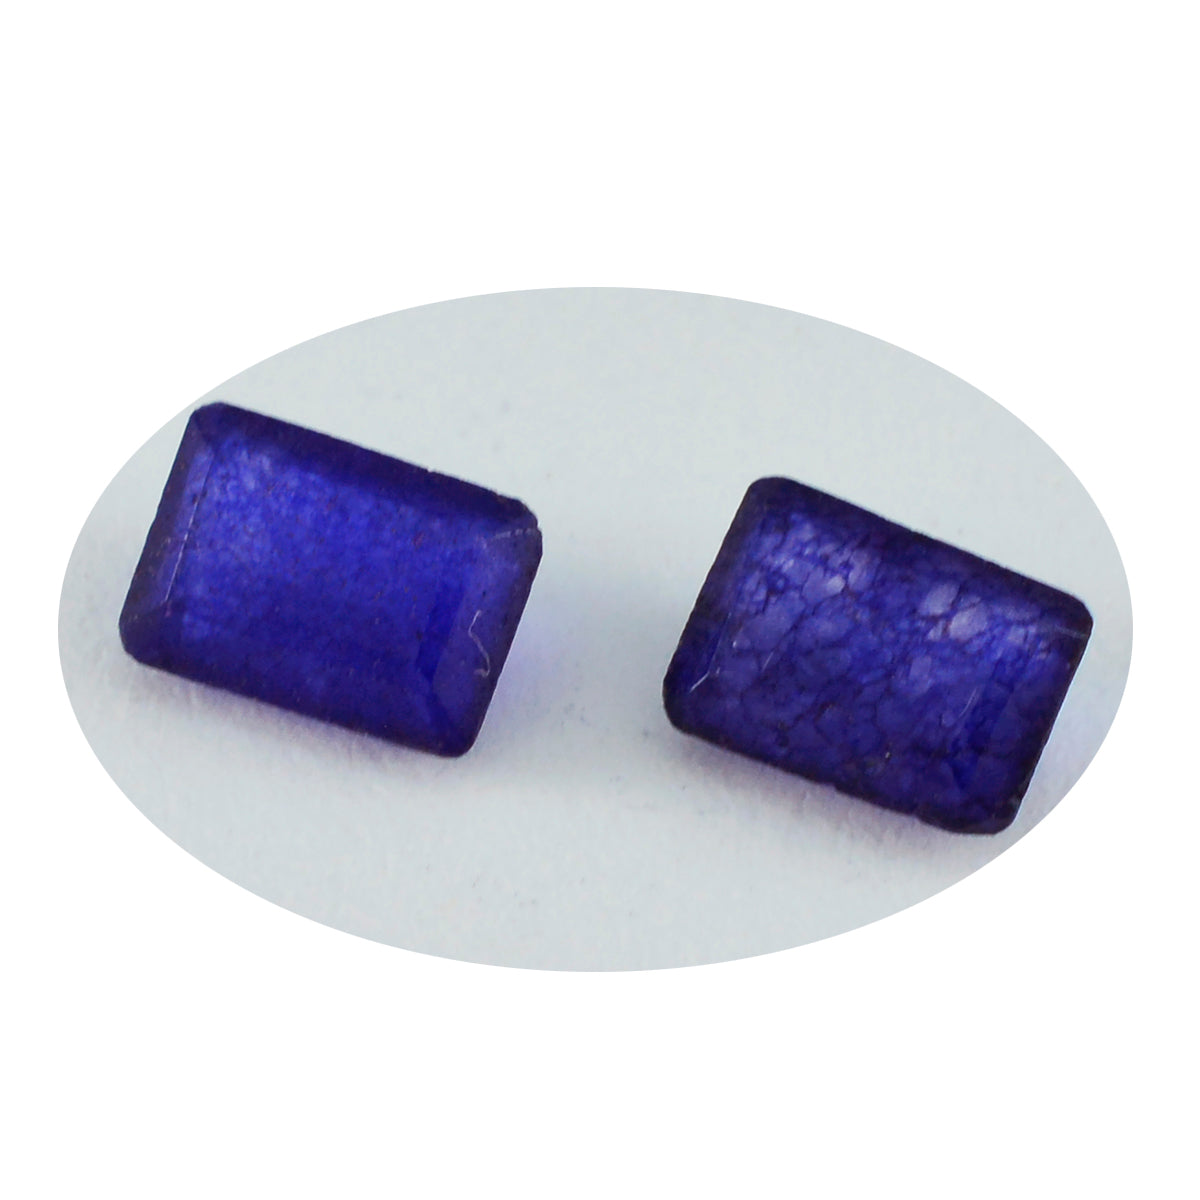 riyogems 1 шт. натуральная синяя яшма граненая восьмиугольная форма 6x8 мм красивый качественный свободный драгоценный камень